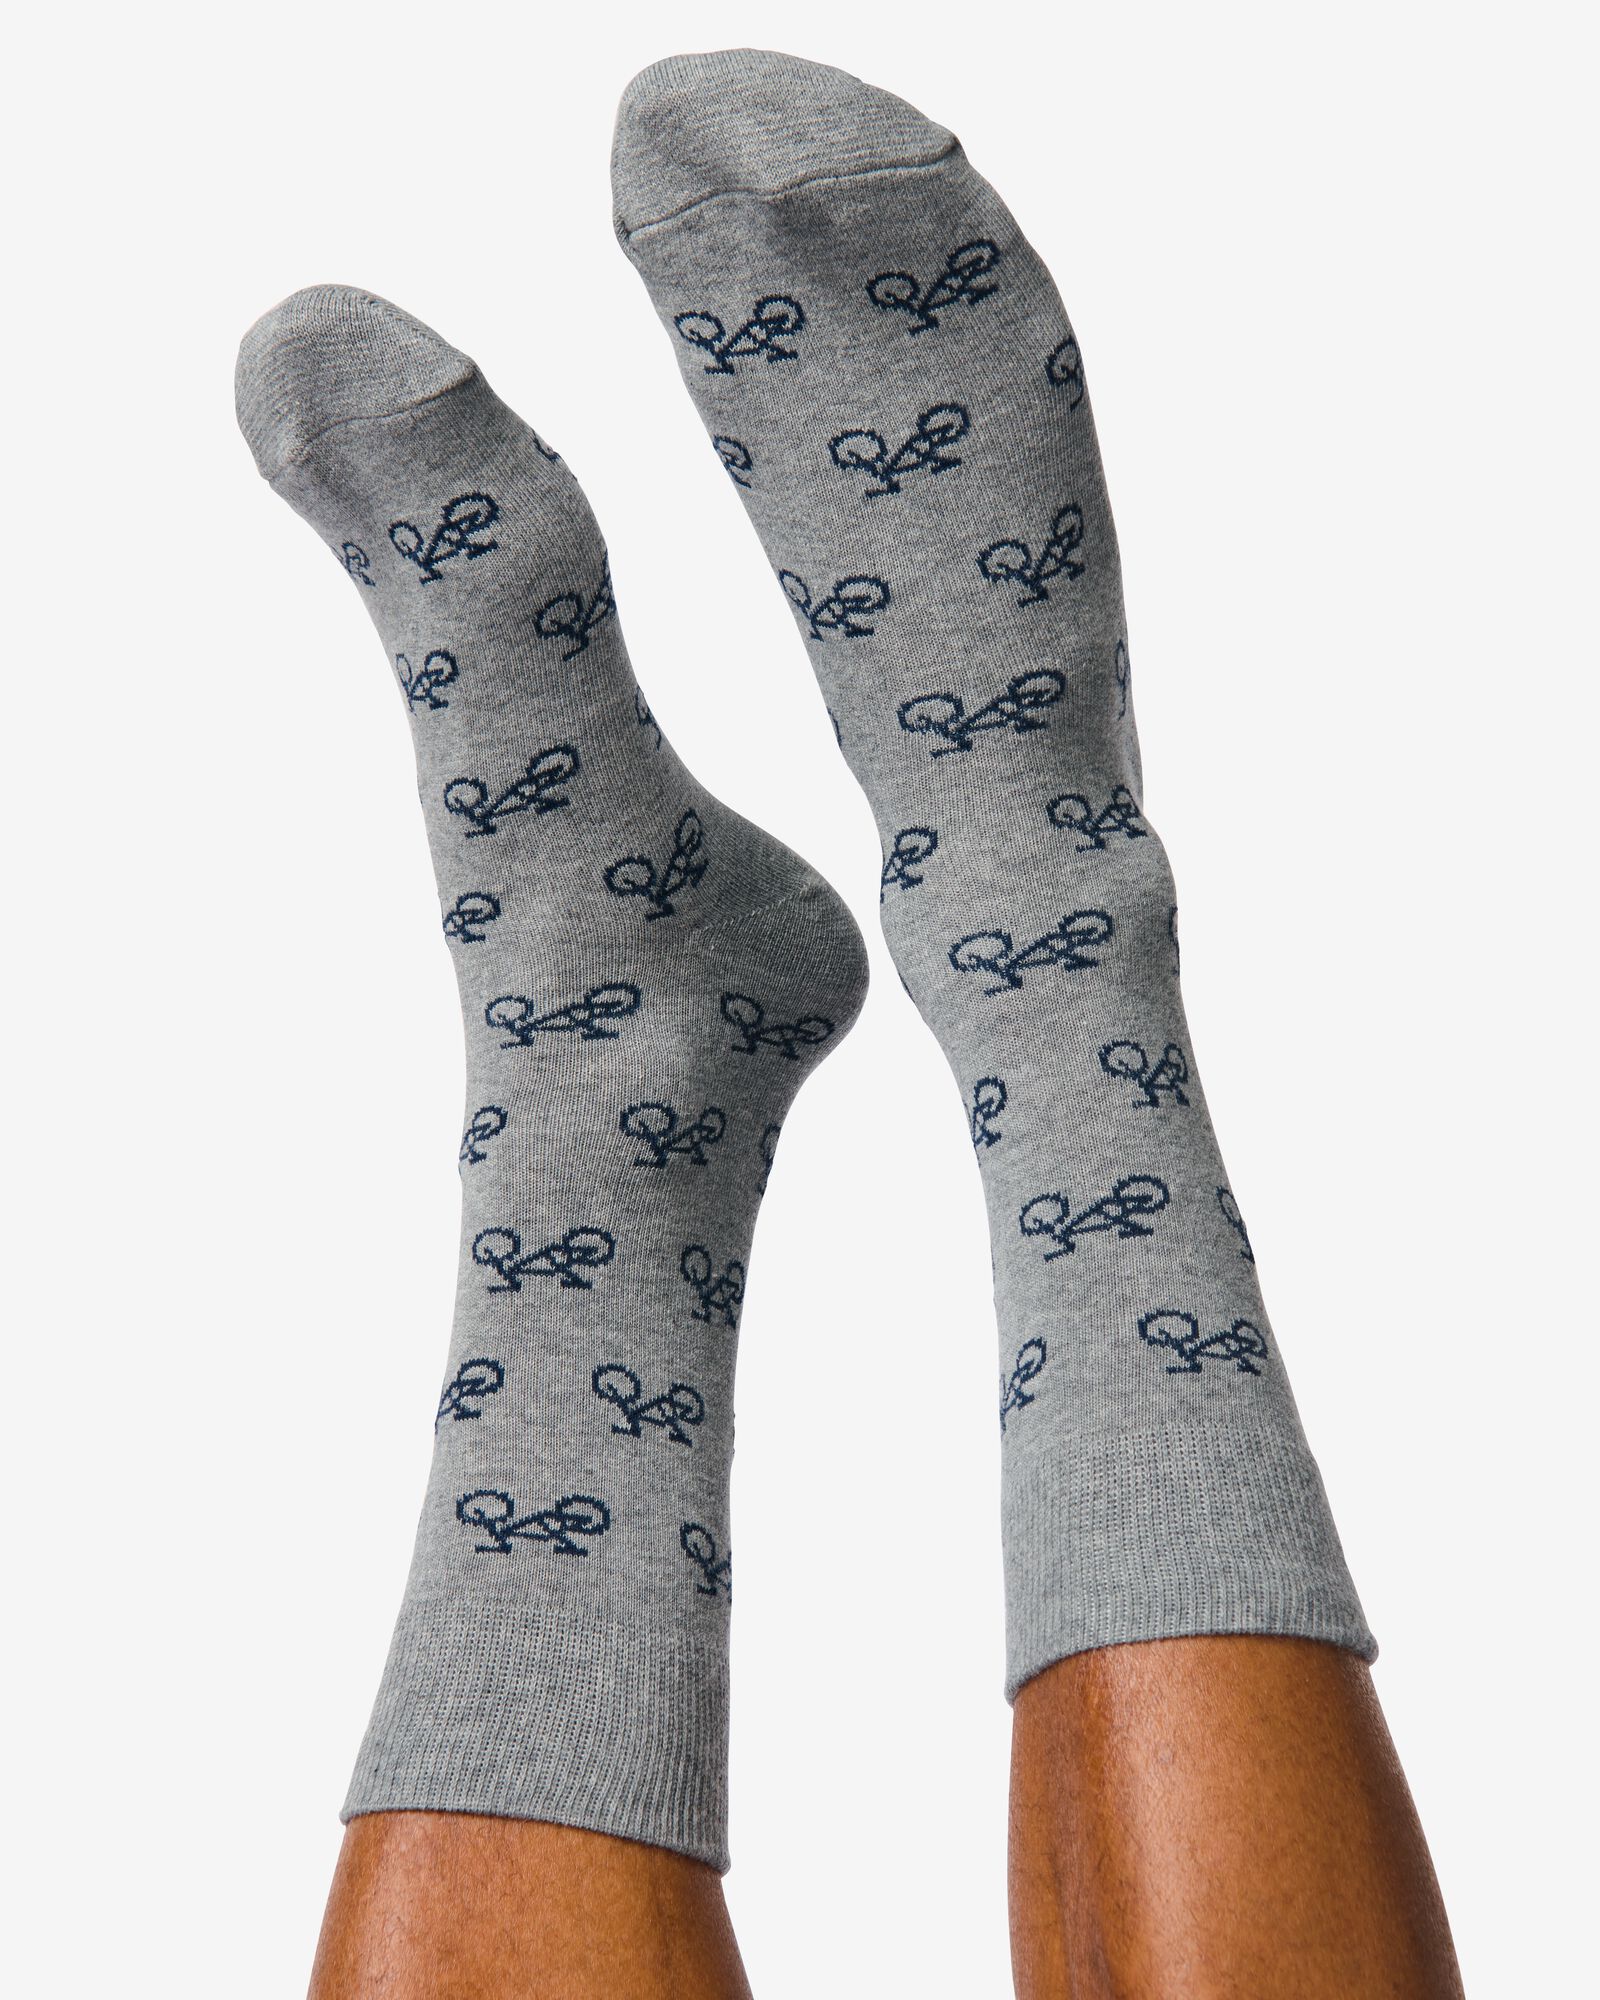 5er-Pack Herren-Socken, mit Baumwolle dunkelblau dunkelblau - 4130710DARKBLUE - HEMA